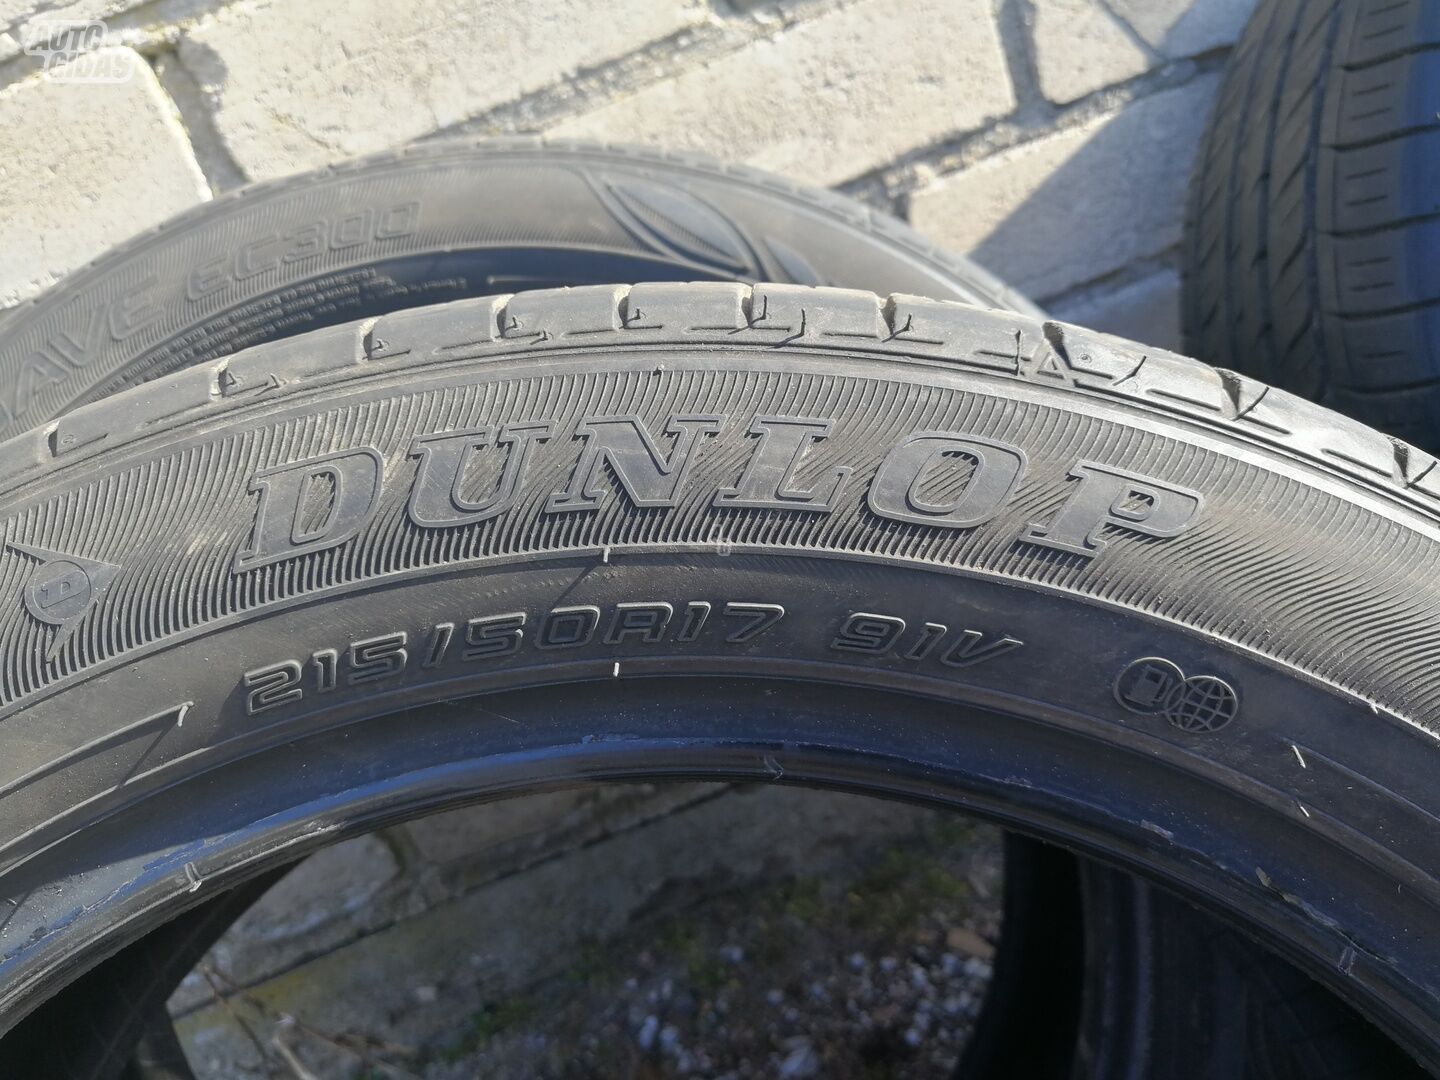 Dunlop R17 vasarinės padangos lengviesiems